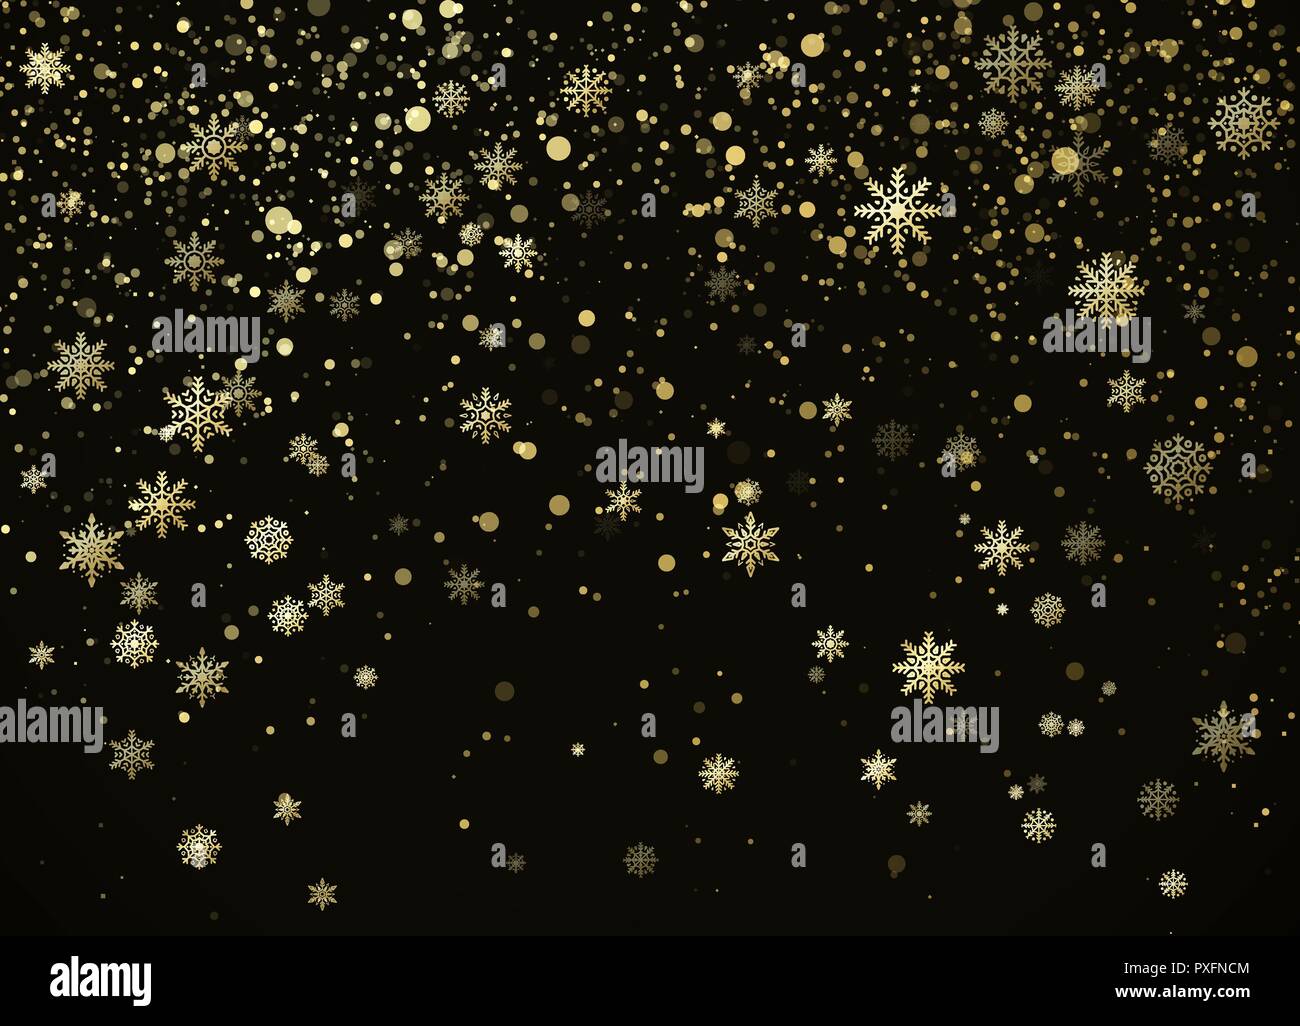 Golden fallen Schneeflocken isoliert auf darck Hintergrund. Neues Jahr nad Weihnachten dekorative Muster. Vector Illustration Stock Vektor